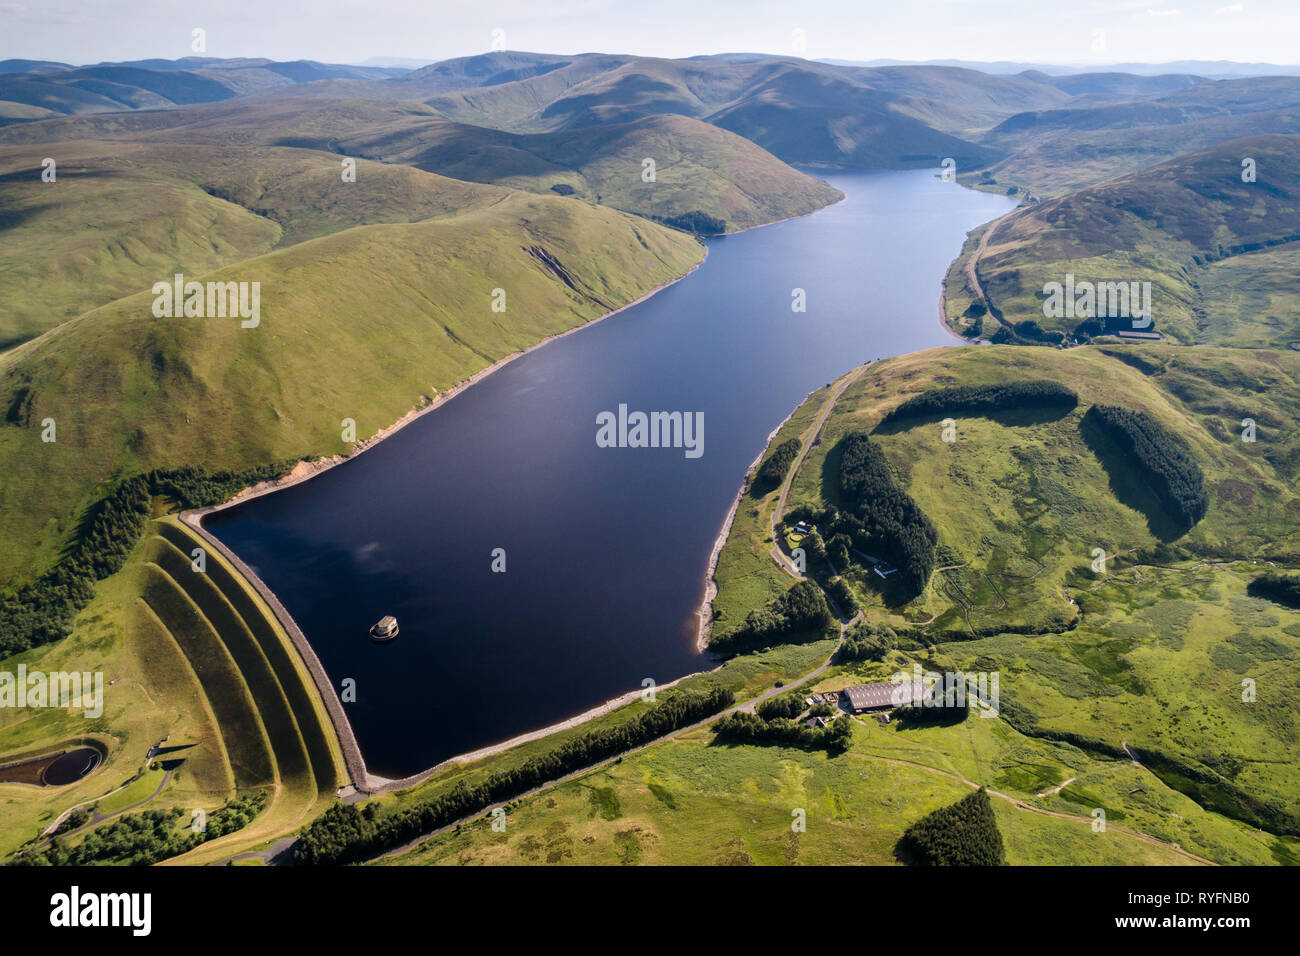 Imagen aérea del depósito Megget mostrando la mayor represa de tierra en Escocia y el agua circundante, el área de la captación. Foto de stock